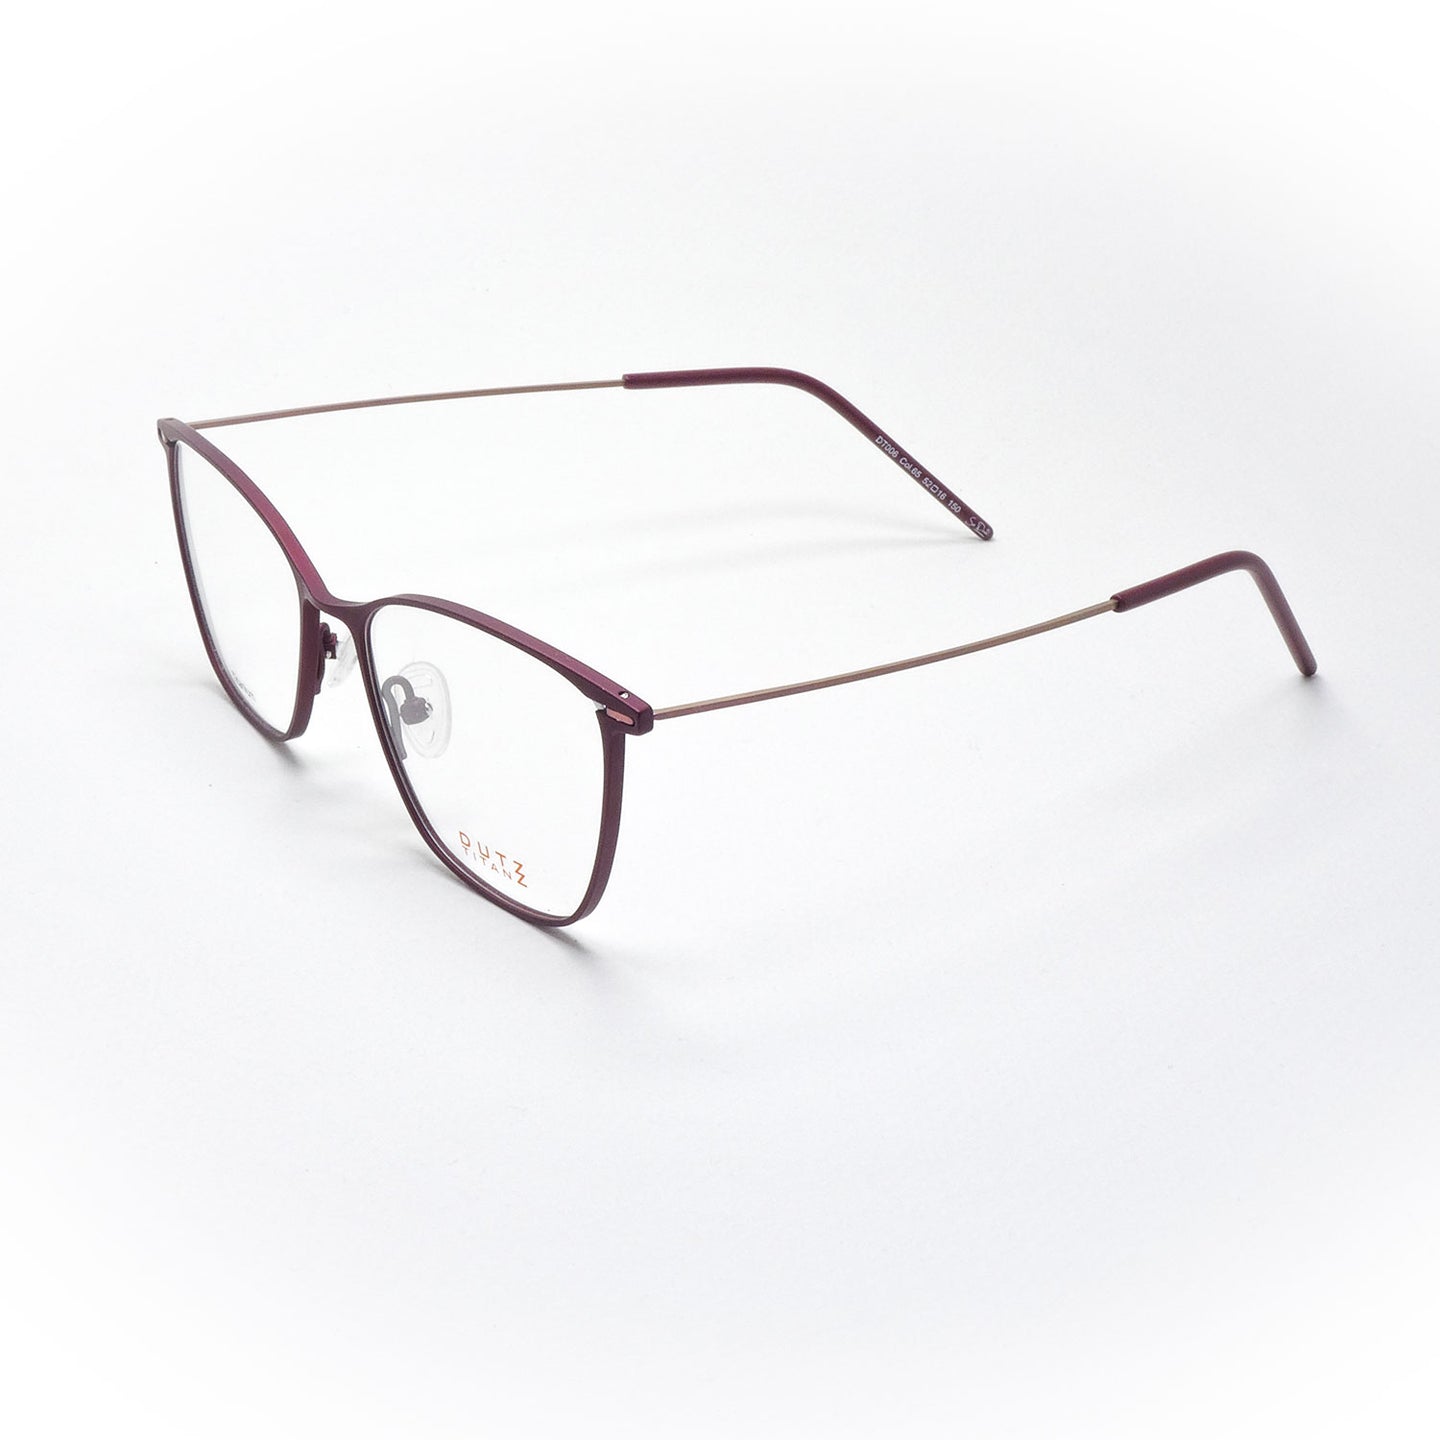 Glasses DUTZ model DT 006 color 65